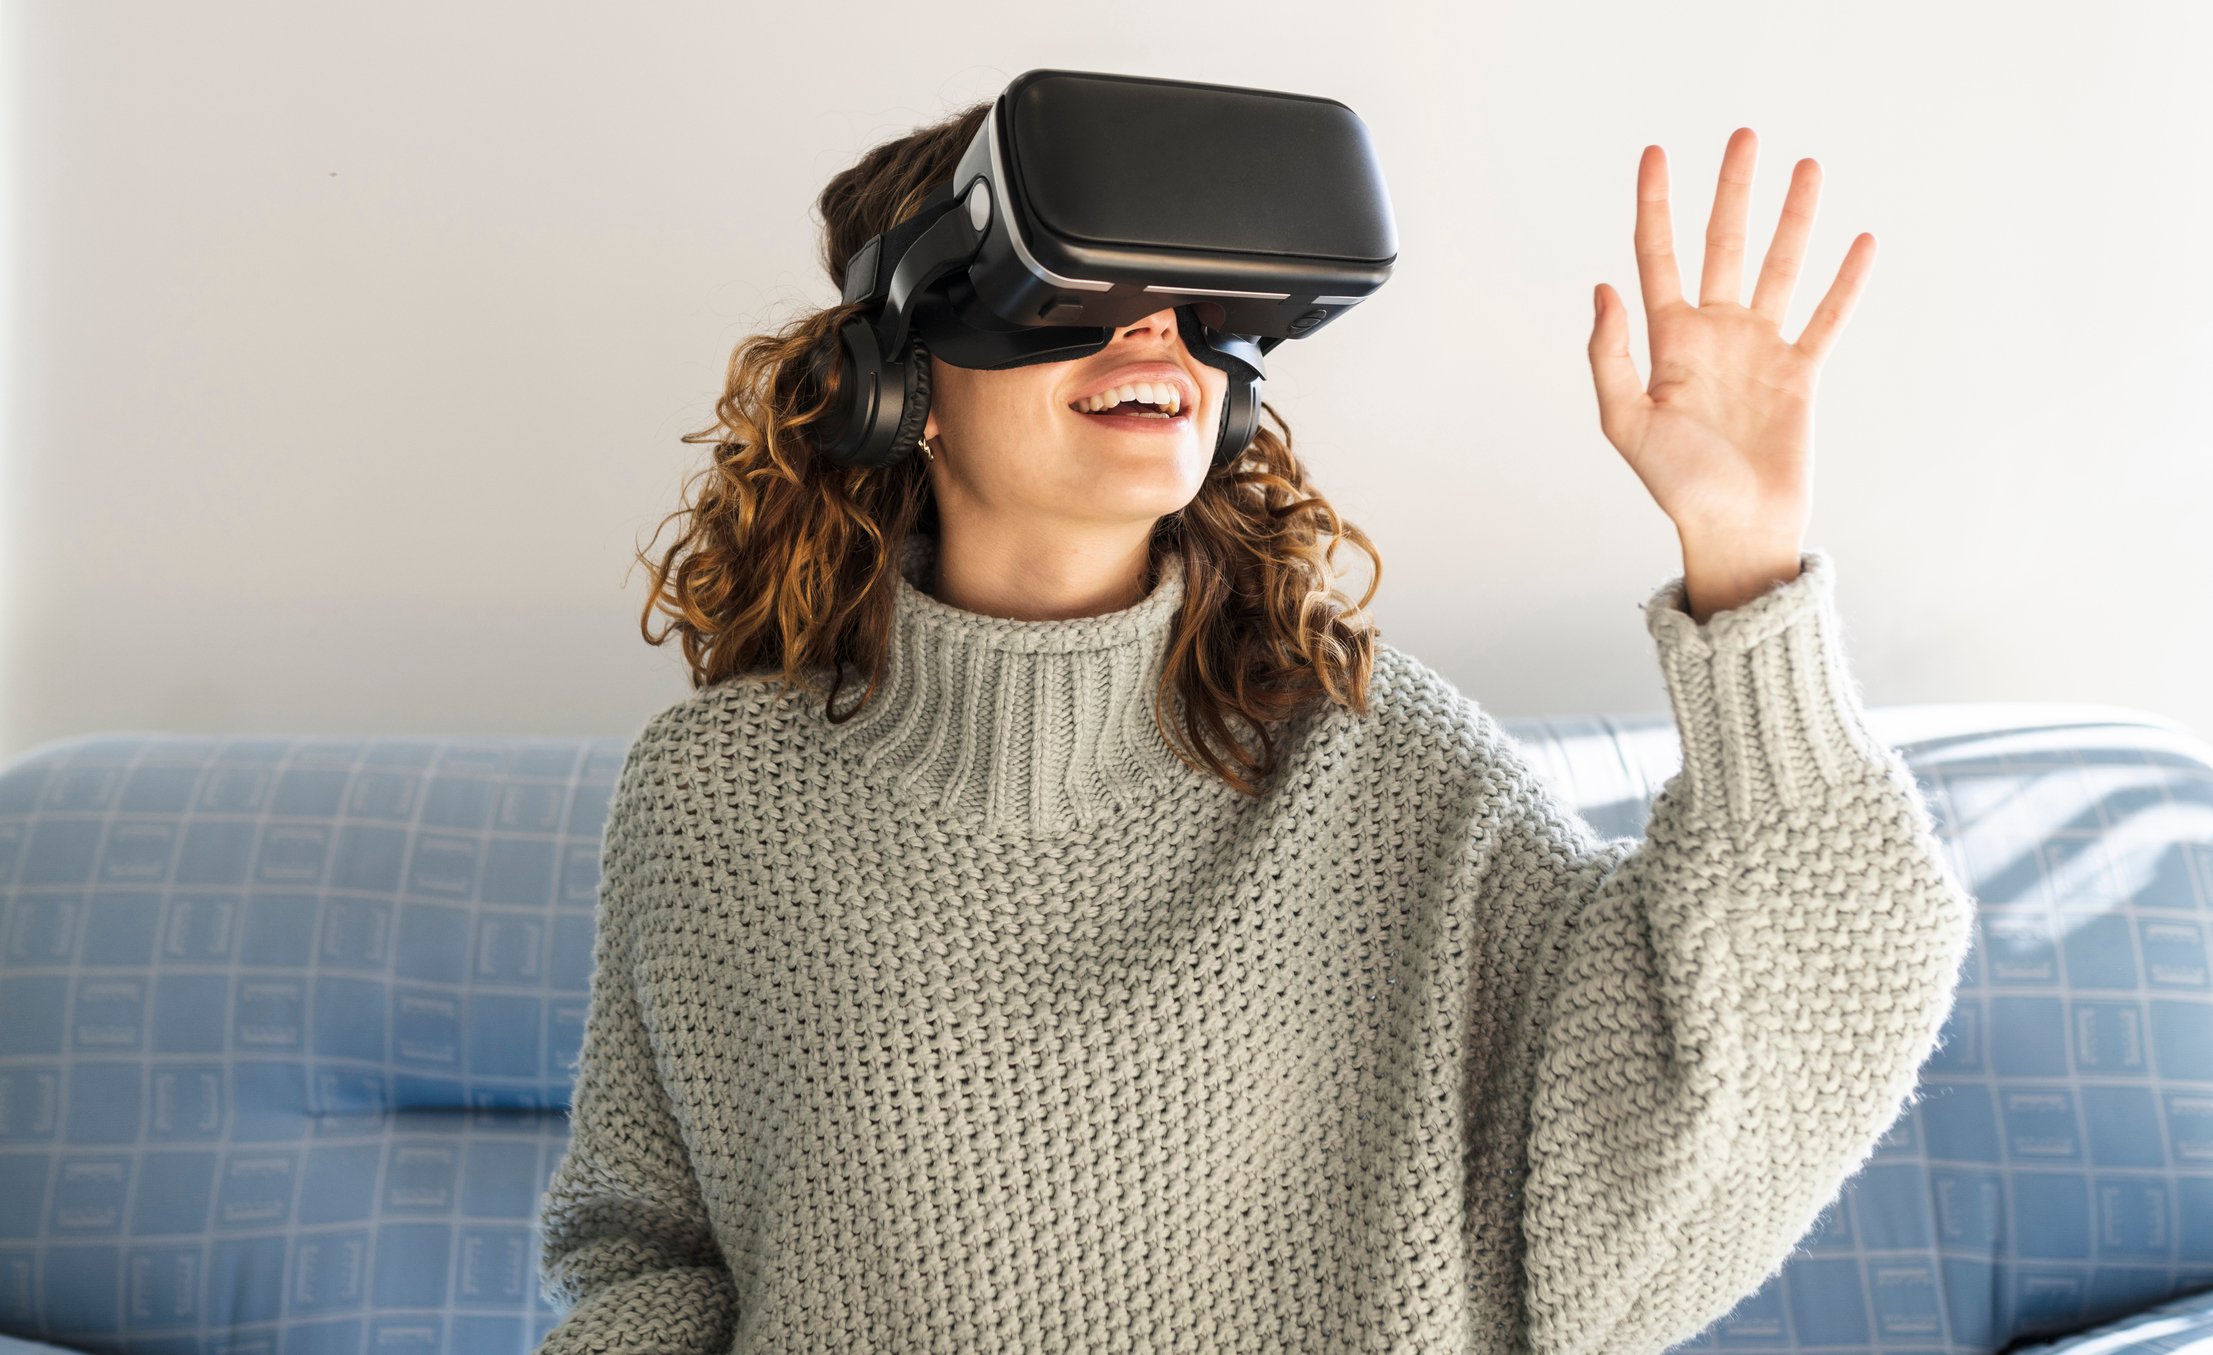 Óculos VR já é uma tendência tecnológica